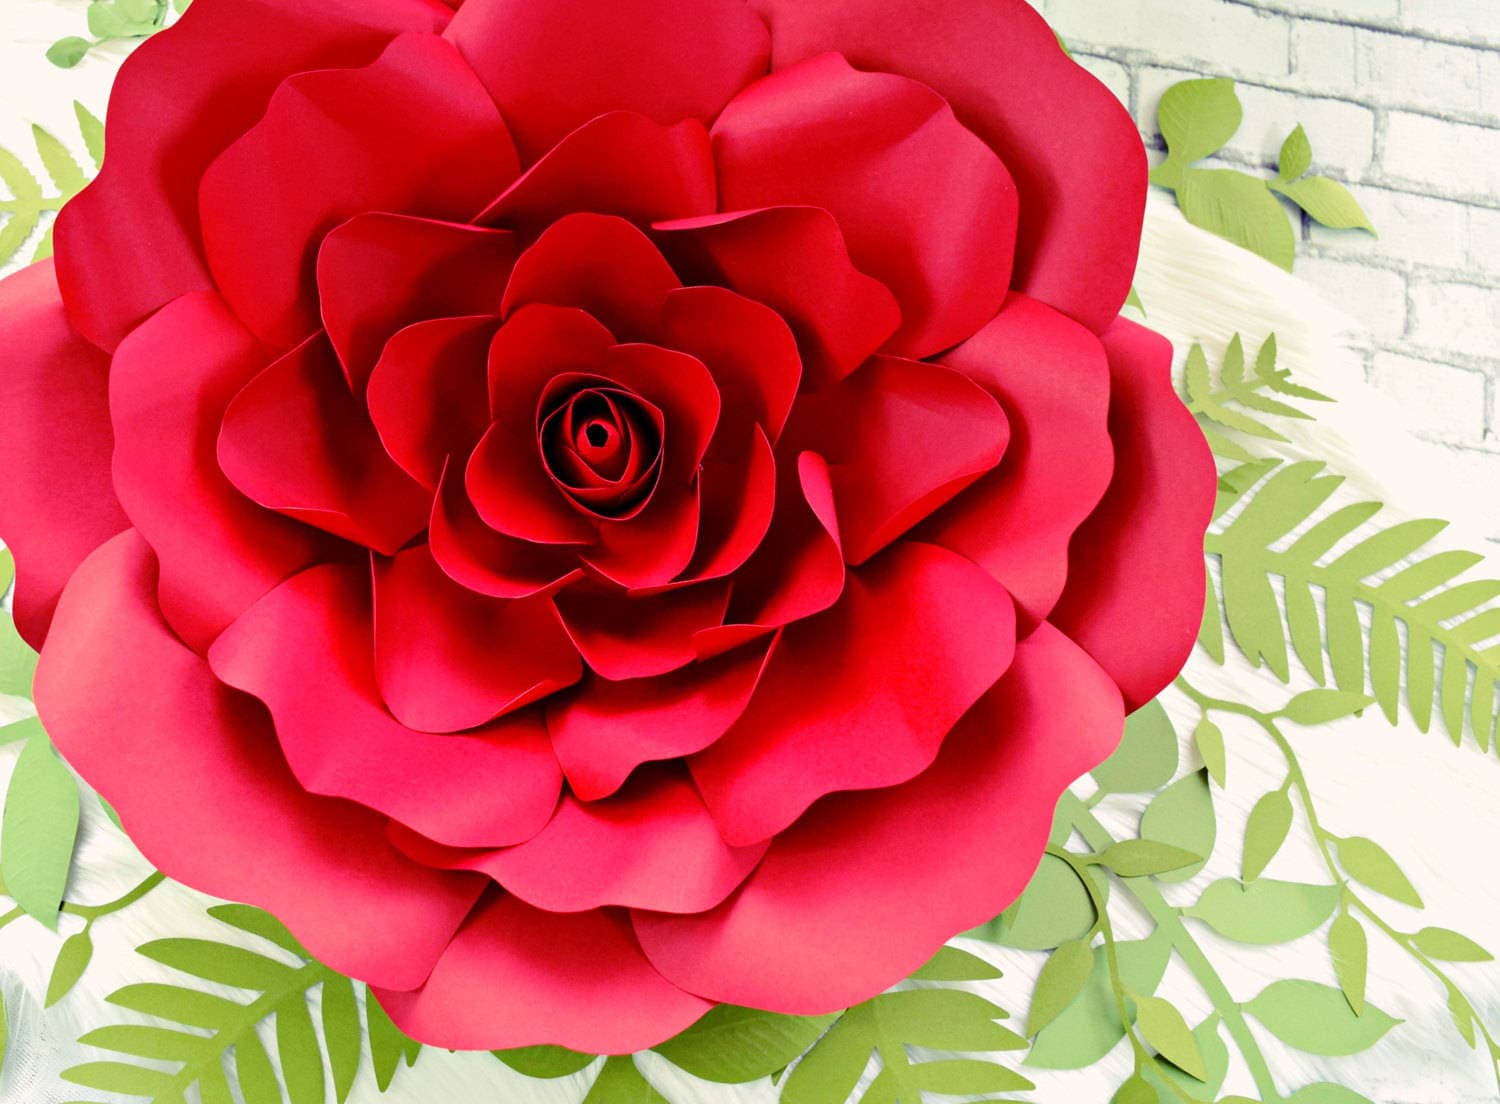 Как сделать из бумаги розу а4: Цветы из бумаги розы. Своими руками, пошаговые инструкции + 500 фото